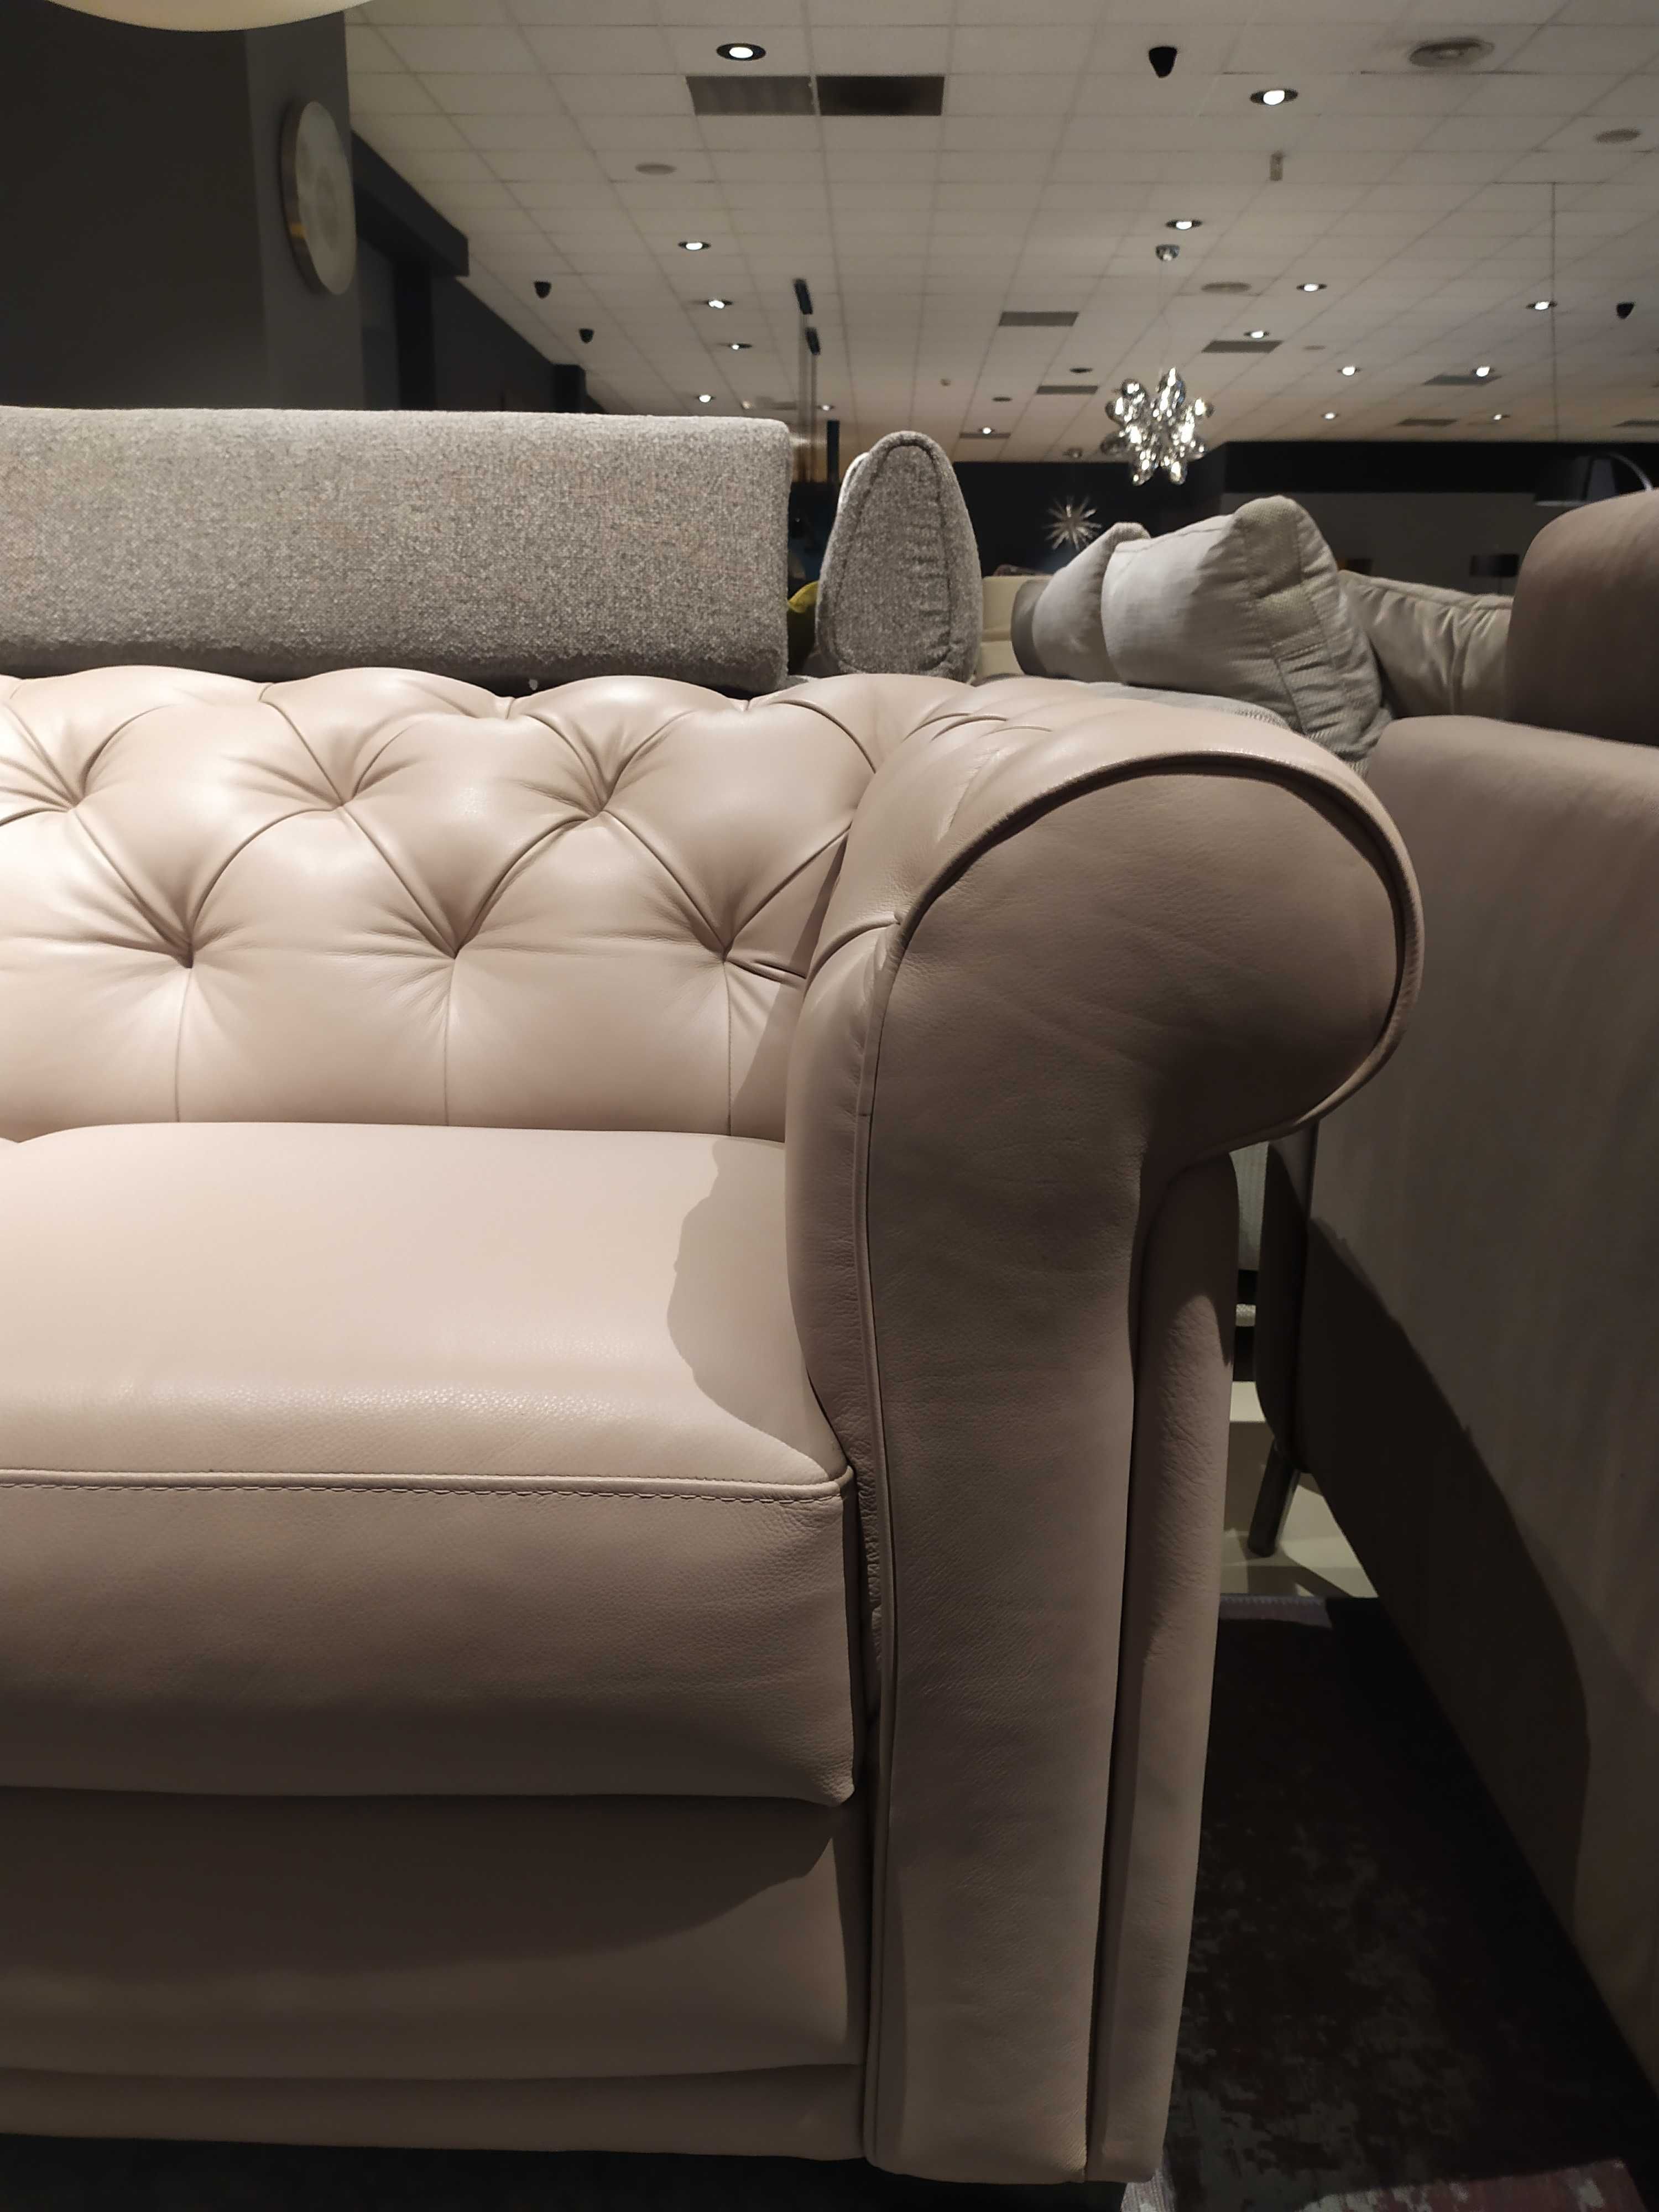 Sofa carisma plus fotel z włoskiej firmy Natuzzi, skóra naturalna